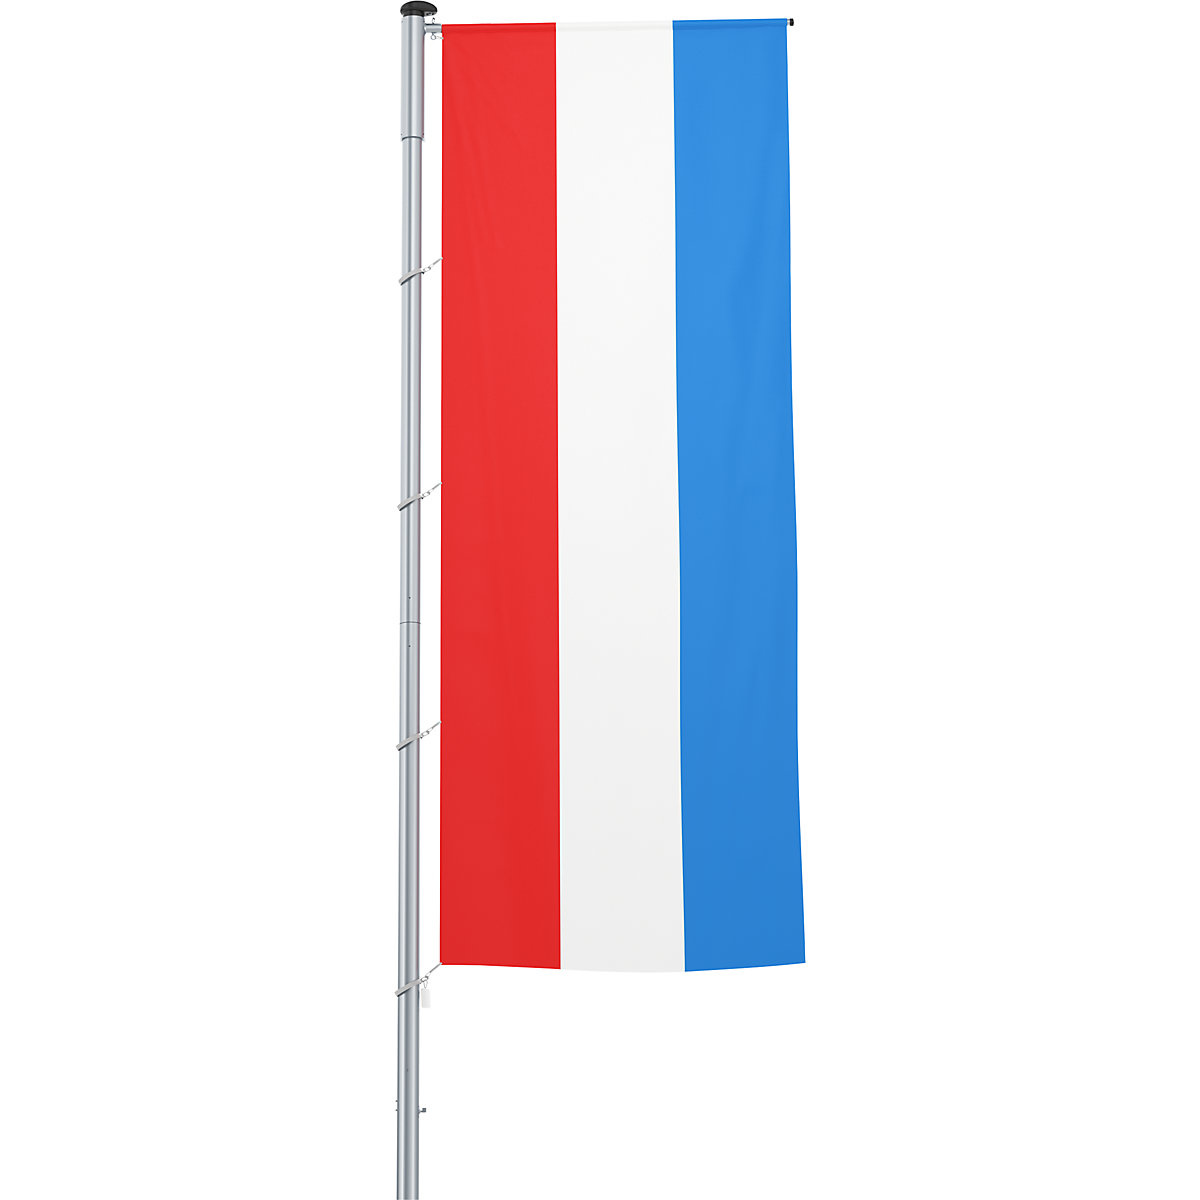 Vlajka na pozdĺžne upevnenie na stožiar/národná vlajka – Mannus, formát 1,2 x 3 m, Luxembursko-30